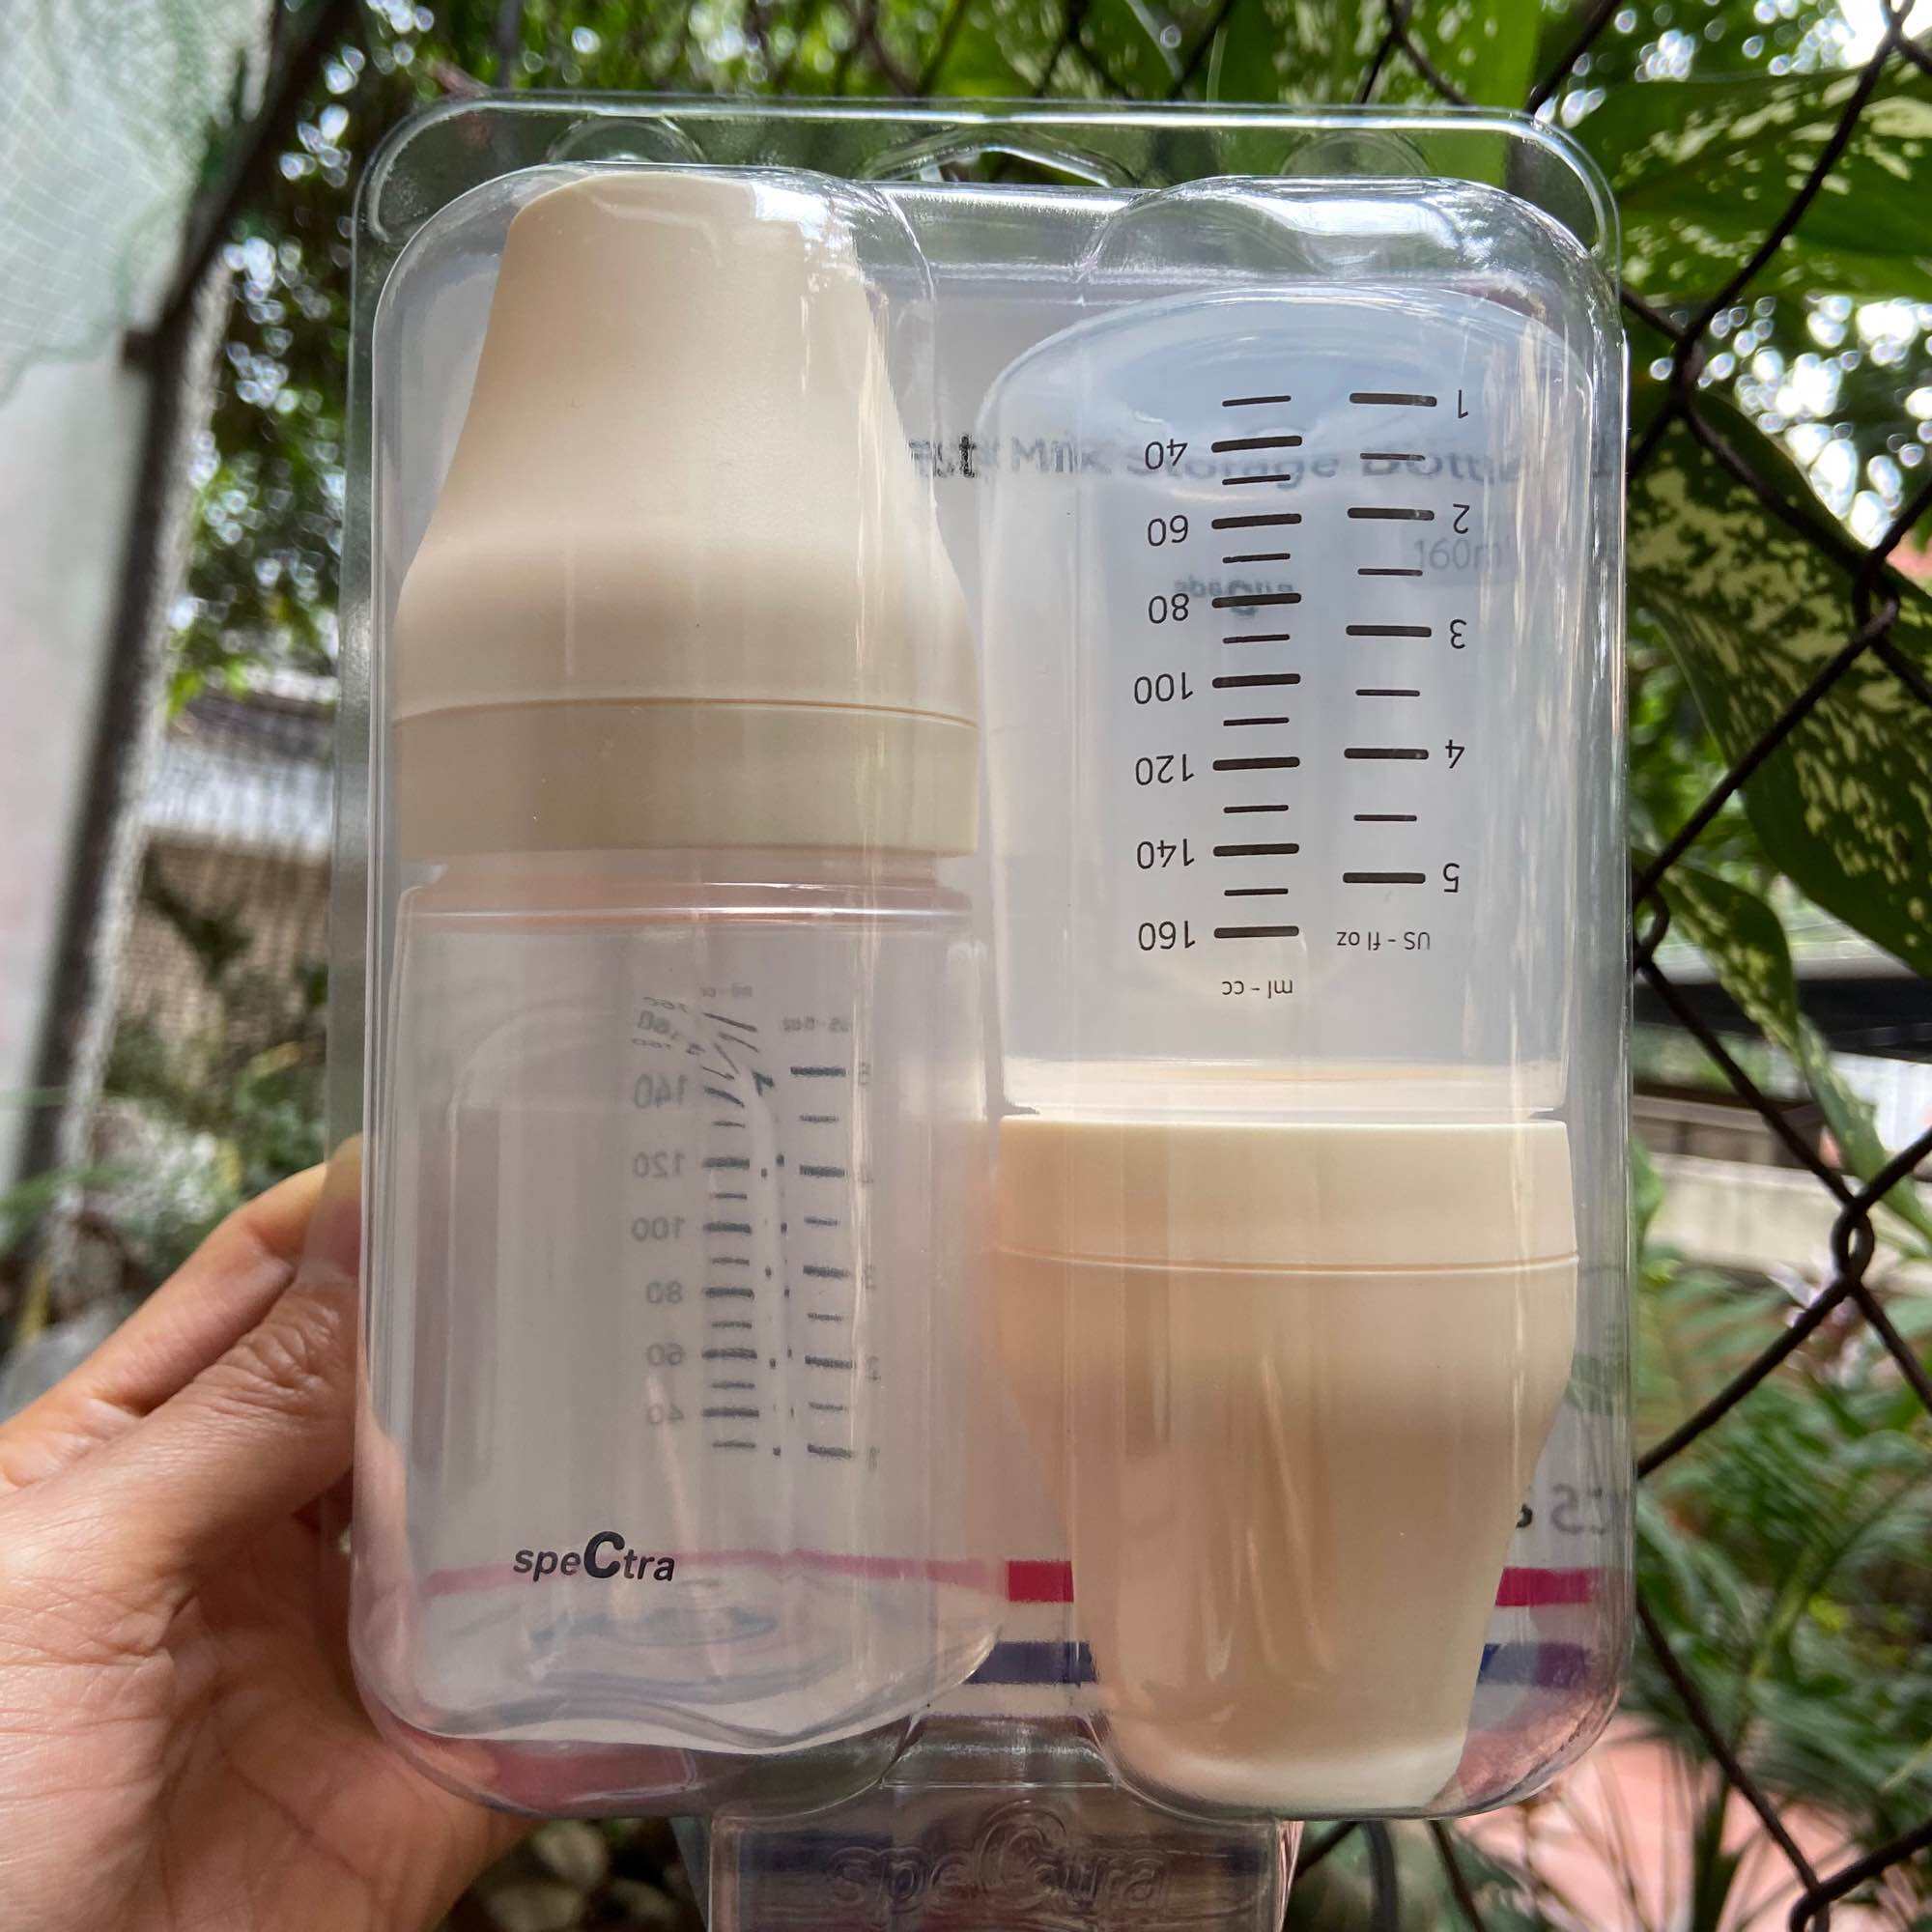 Bộ 2 bình trữ sữa cổ rông Spectra 160ml có nắp đậy lắp vừa phễu hút sữa